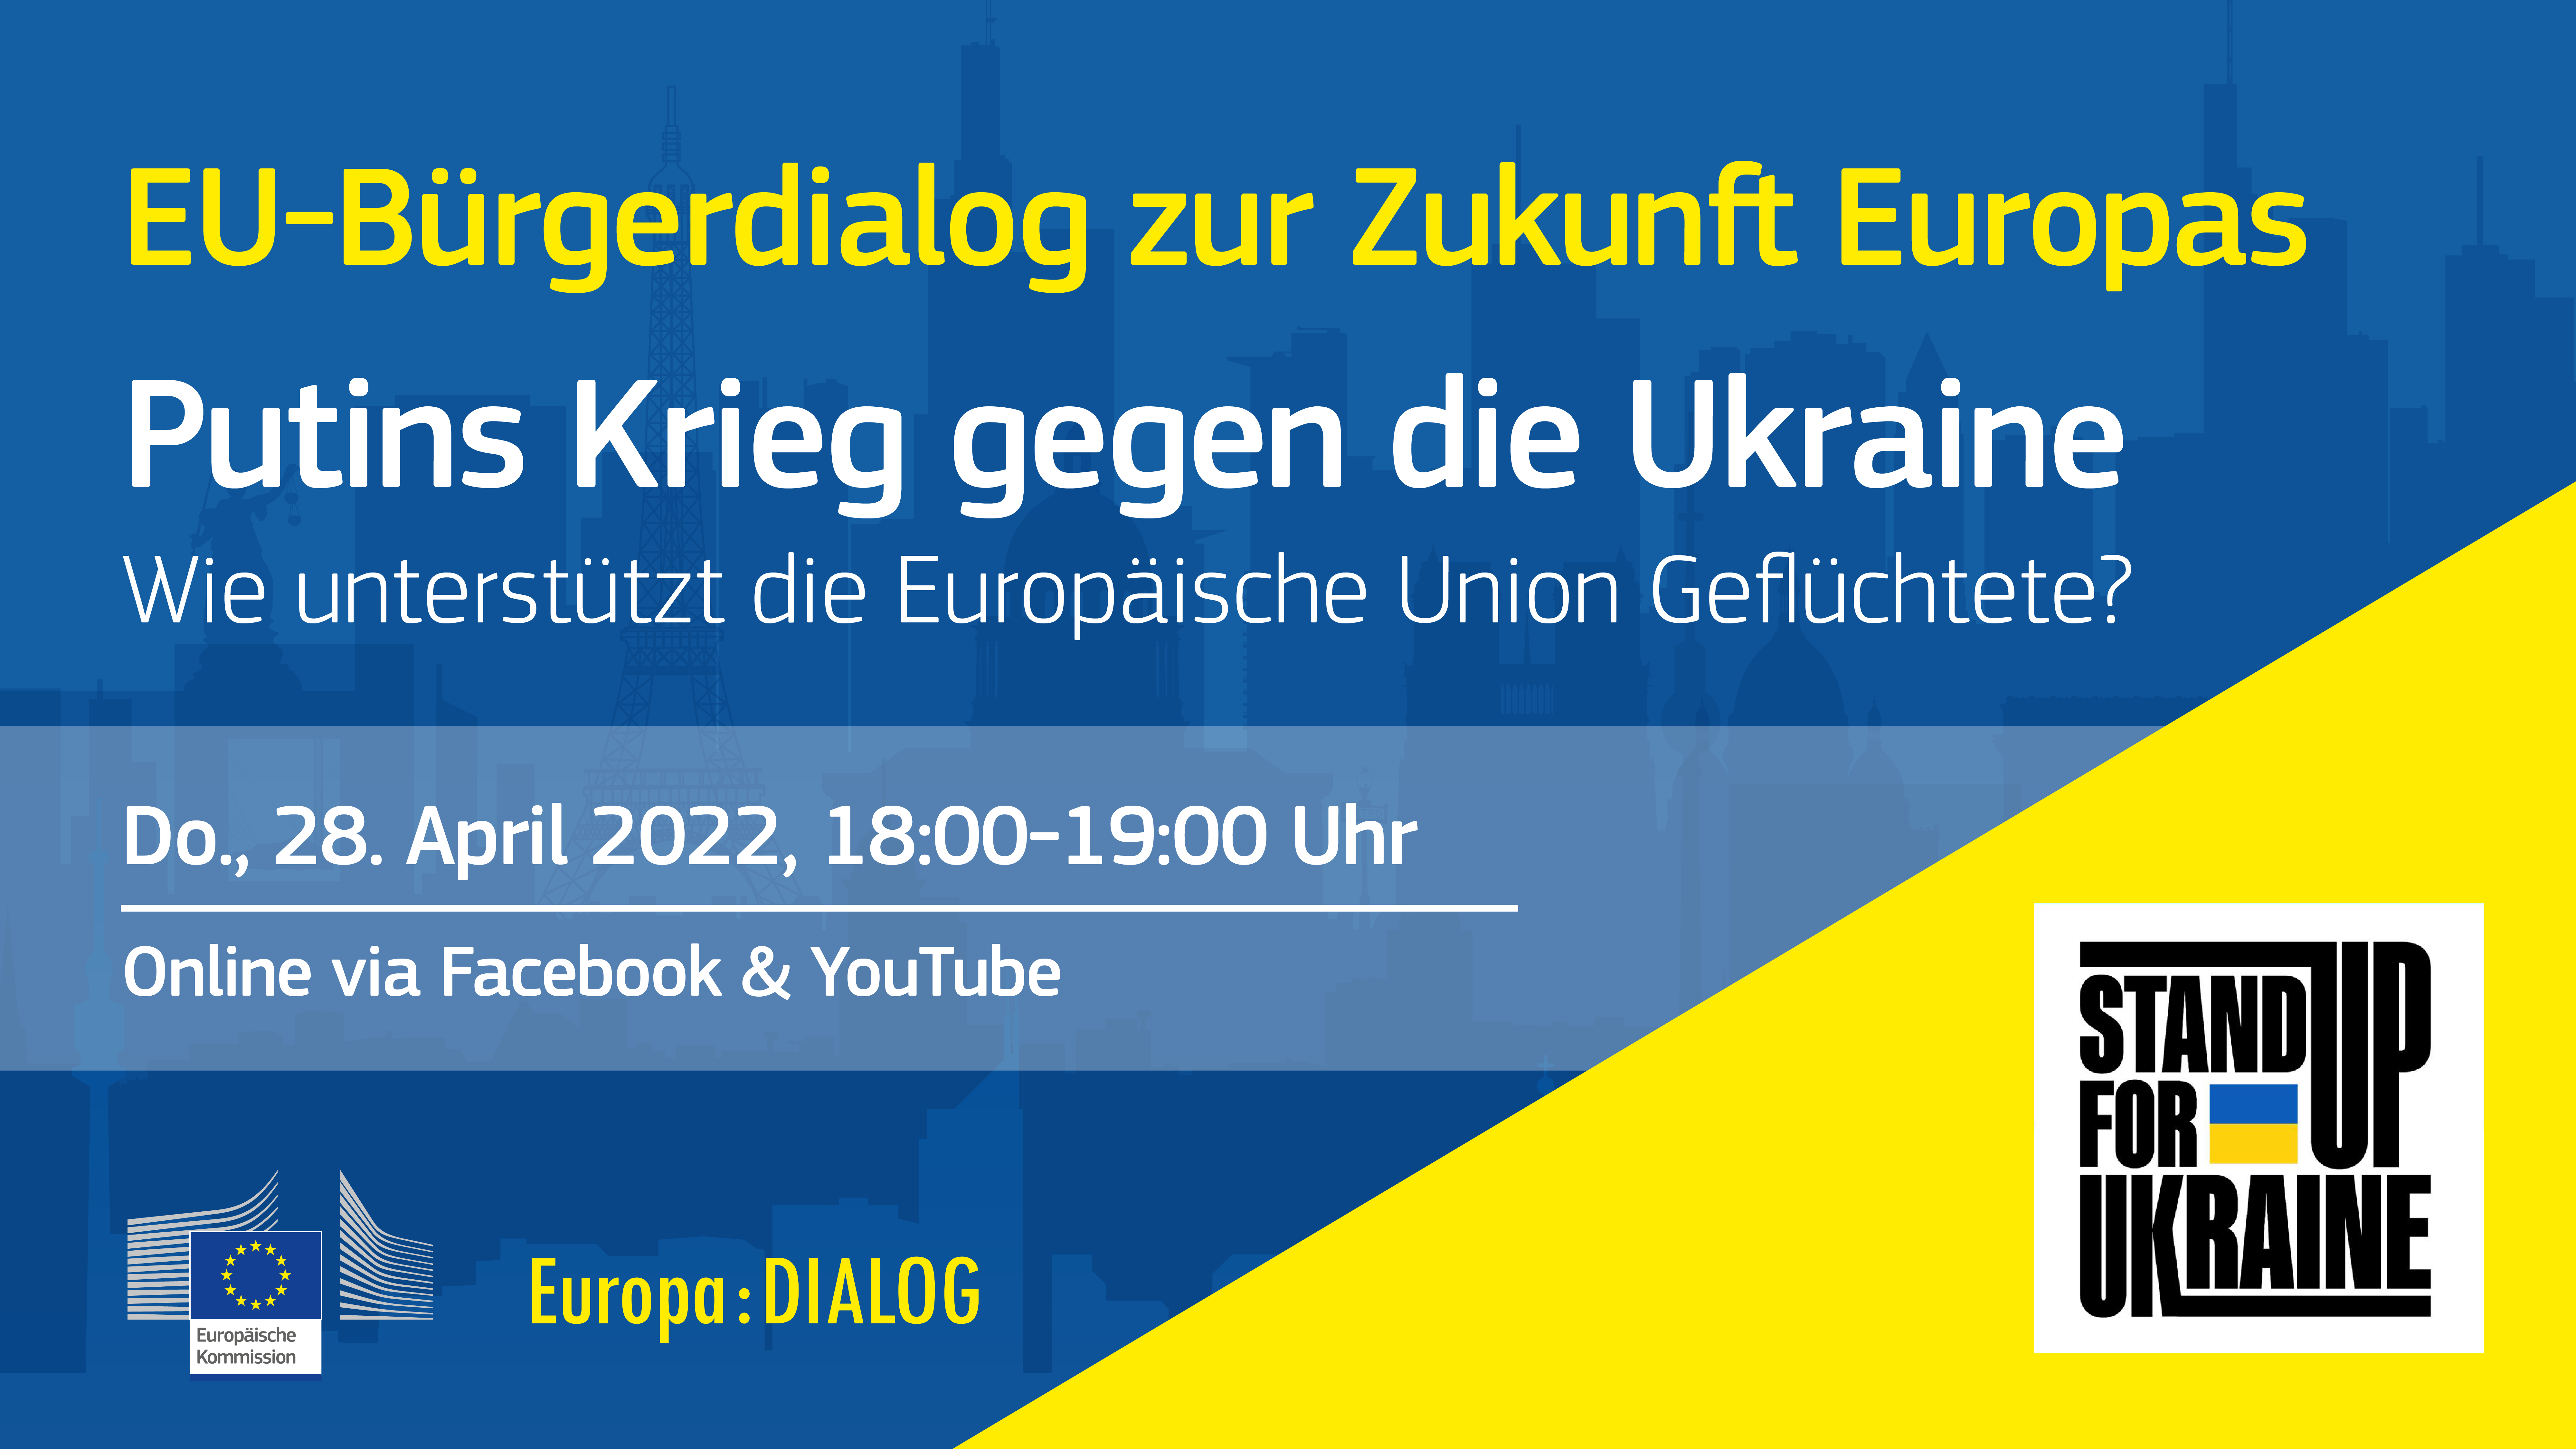 Europa : DIALOG | Putins Krieg gegen die Ukraine | EU-Bürgerdialog zur Zukunft Europas